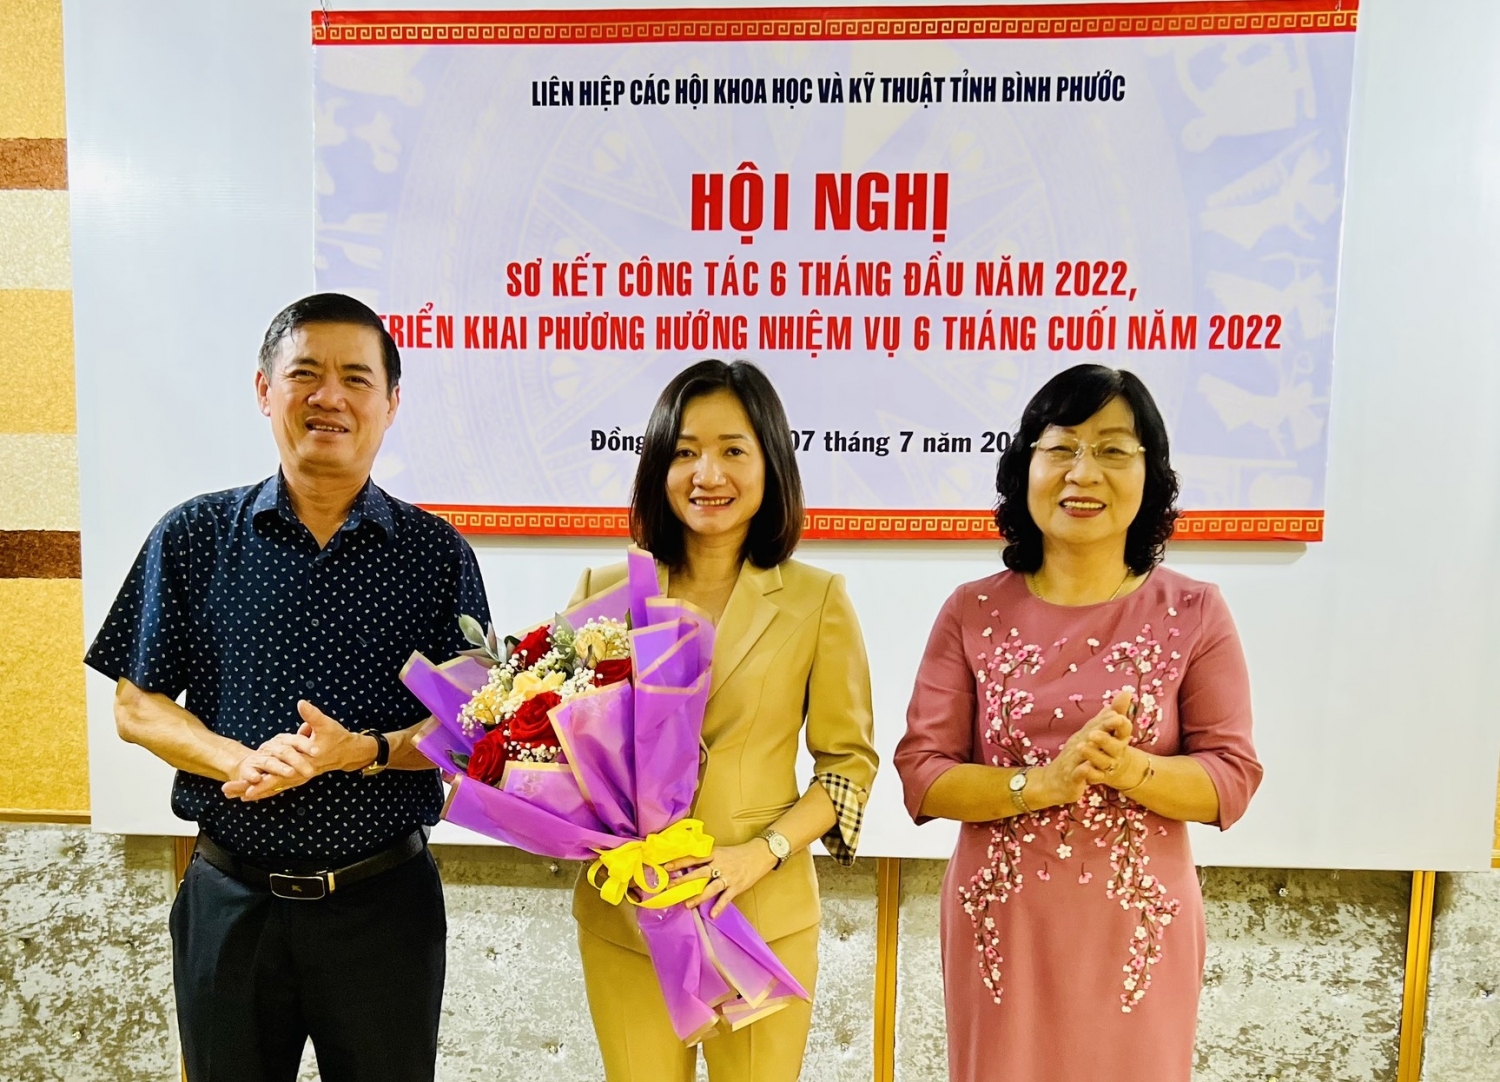 Bà Bùi Thị Minh Thúy, Giám đốc Sở Khoa học và Công nghệ được tín nhiệm bầu giữ chức Phó chủ tịch kiêm nhiệm Liên hiệp hội khóa III, nhiệm kỳ 2017-2022